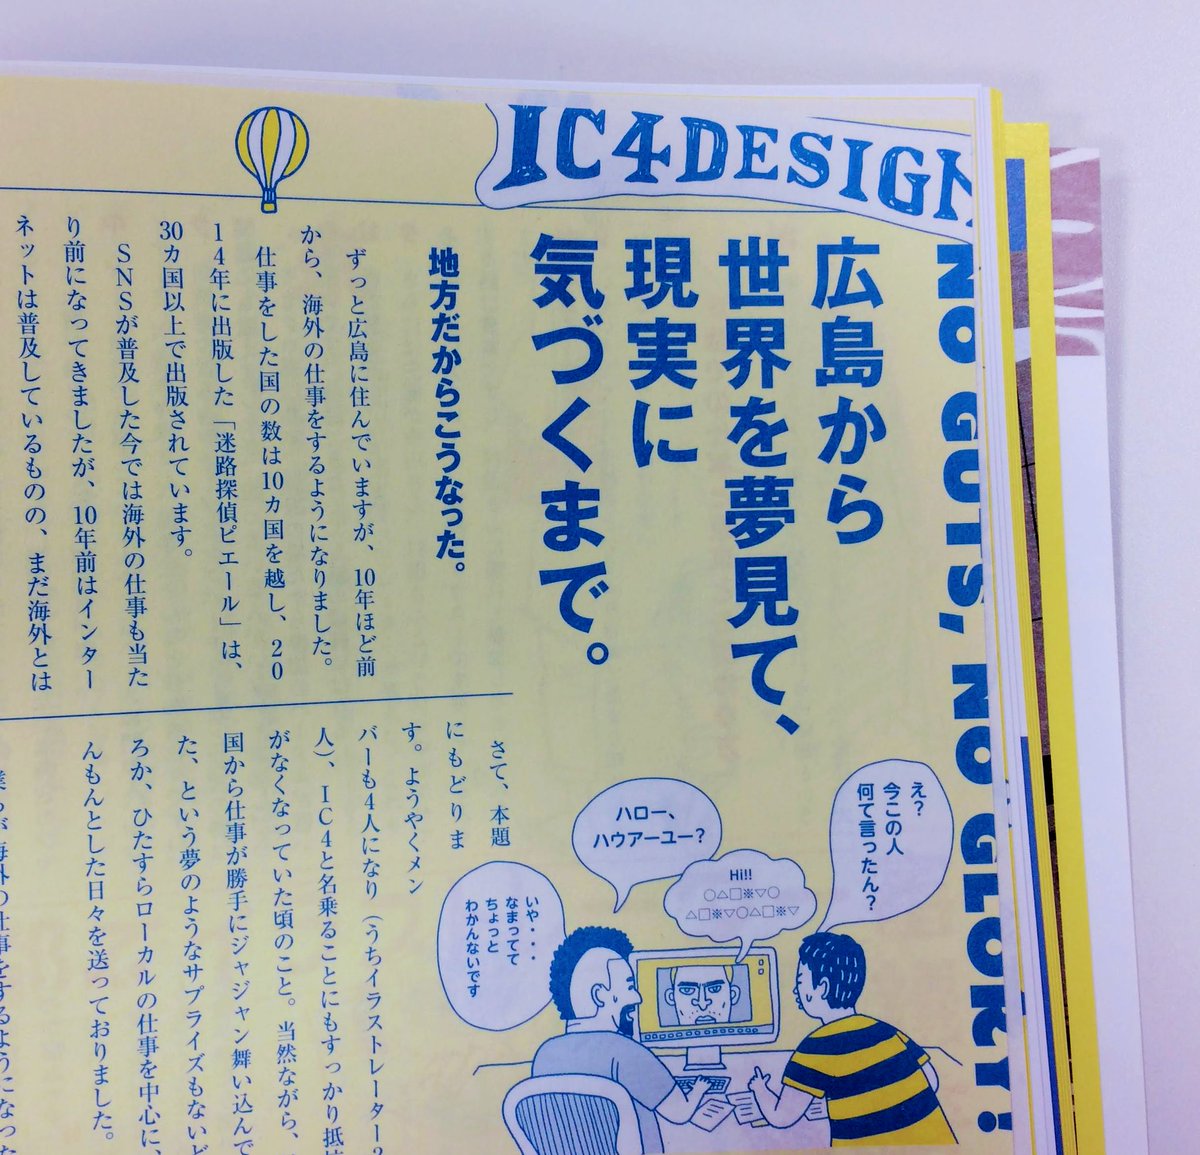 Daisuke Matsubara Tis 東京イラストレーターズソサエティ 東京 といっても会員の中には東京以外の地域に住んでる人たちもいま Ic4とか す 地方ならではの仕事の仕方などの記事です 広島から世界を夢見て 現実に気づくまで Ic4design その他